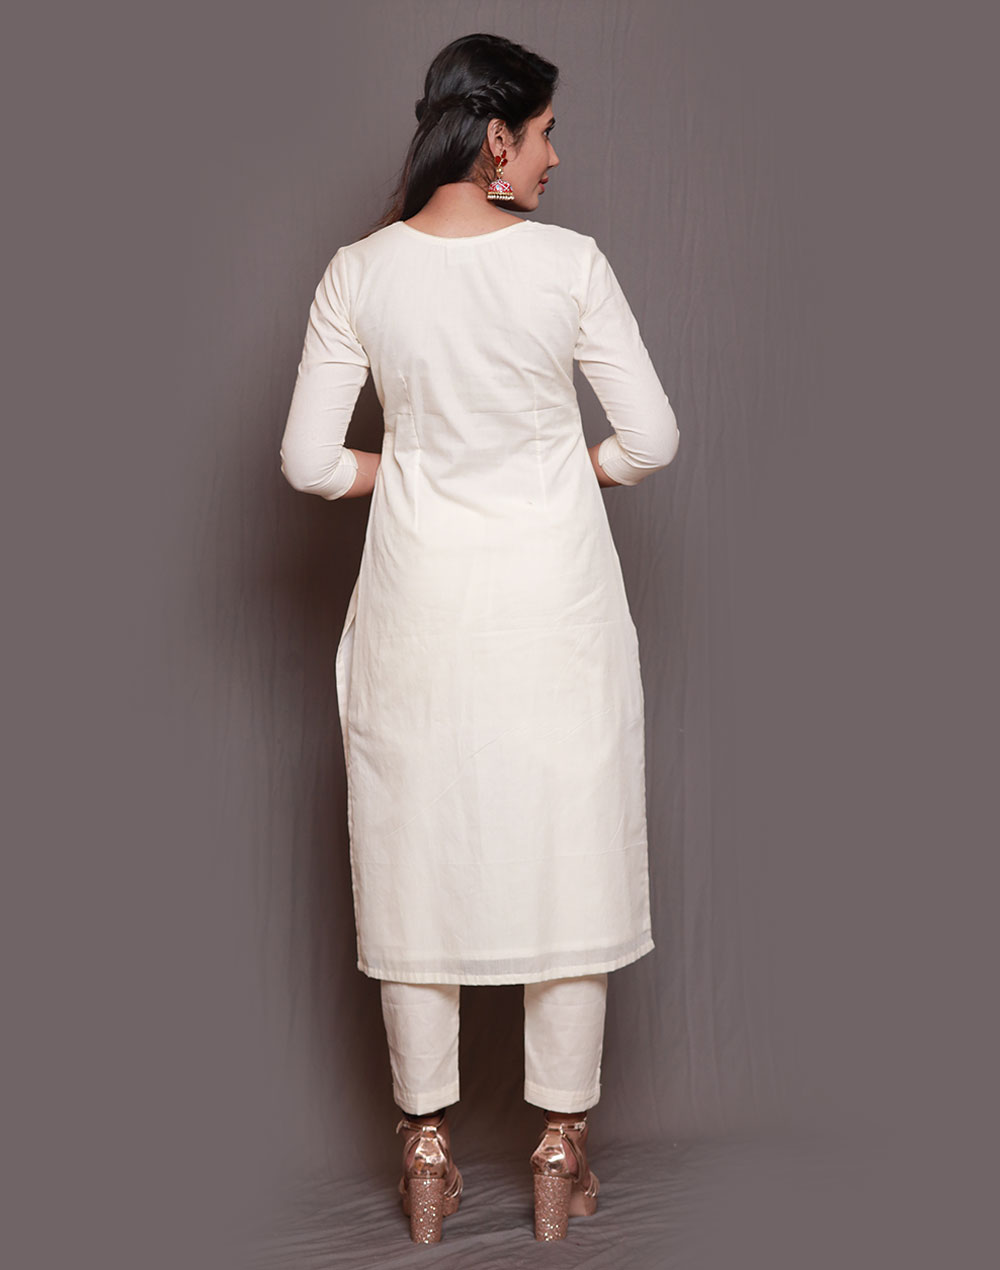 Ladies Pant Suits In Kerala | Ladies Ladies Pant Suits Manufacturers  Suppliers